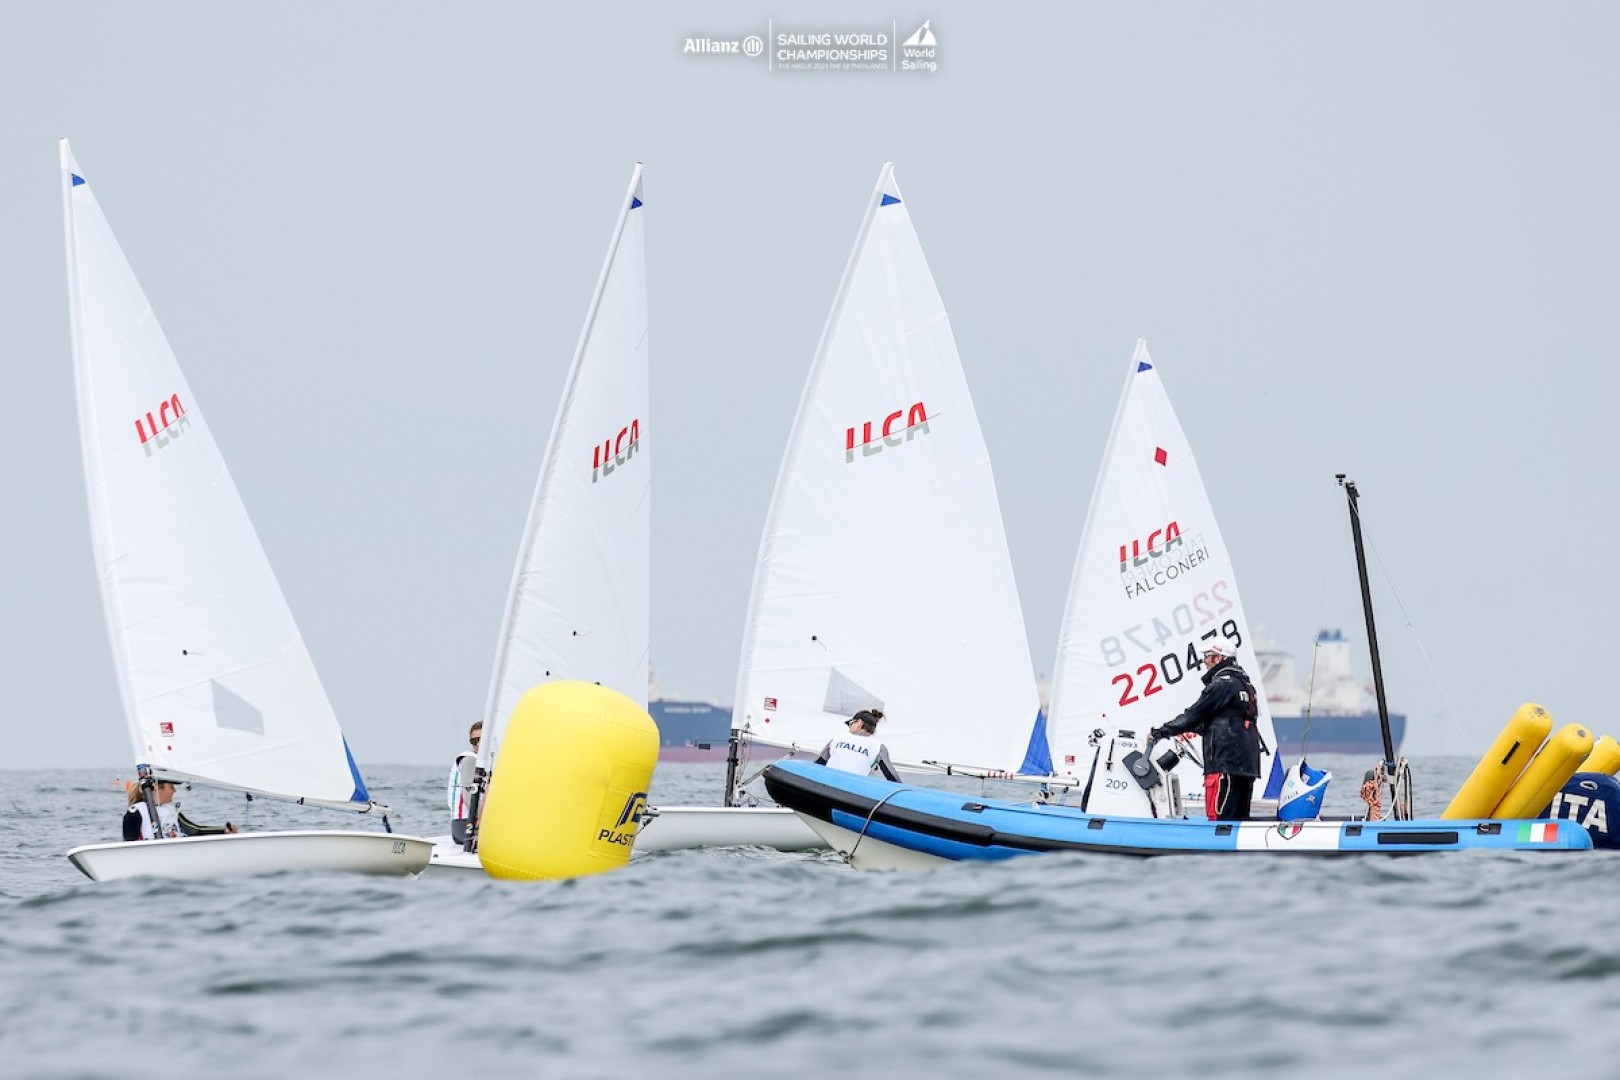 Terzo giorno dei Sailing World Championships di Den Haag con vento oscillante e onda corta.